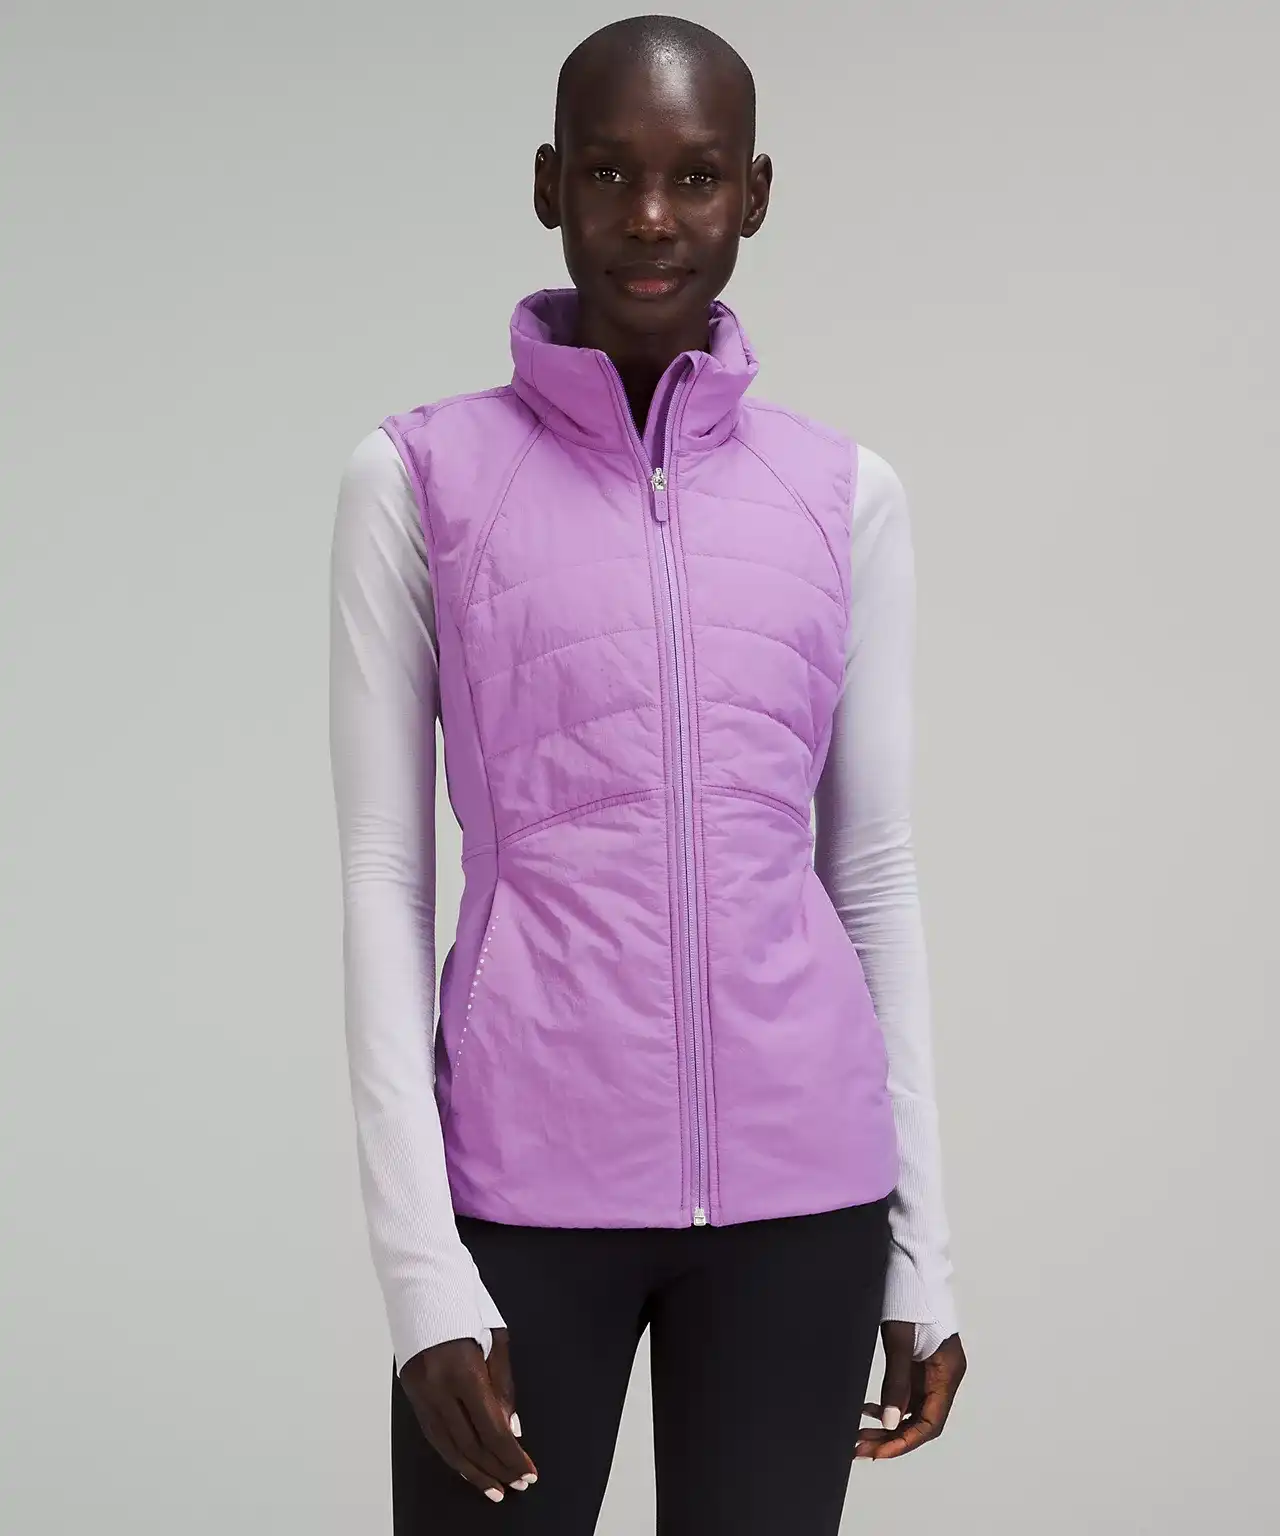 purple vest on model